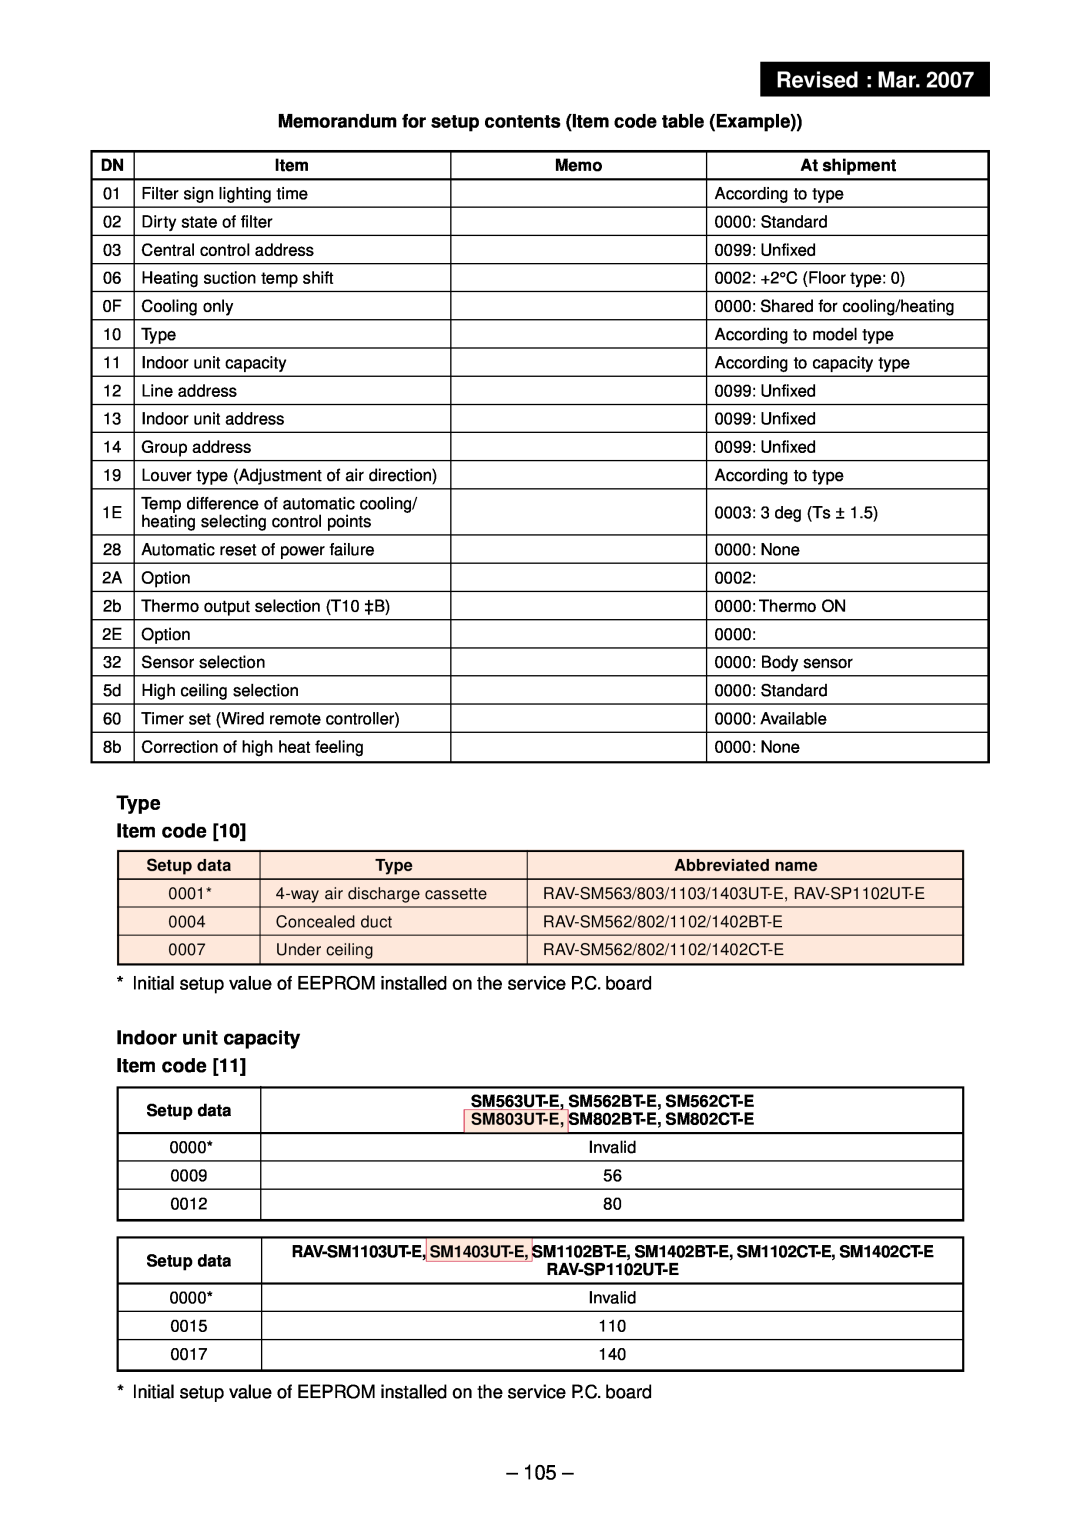 Toshiba RAV-SM803UT-E, RAV-SM1102CT-E, RAV-SM1102BT-E Revised Mar, Memorandum for setup contents Item code table Example 